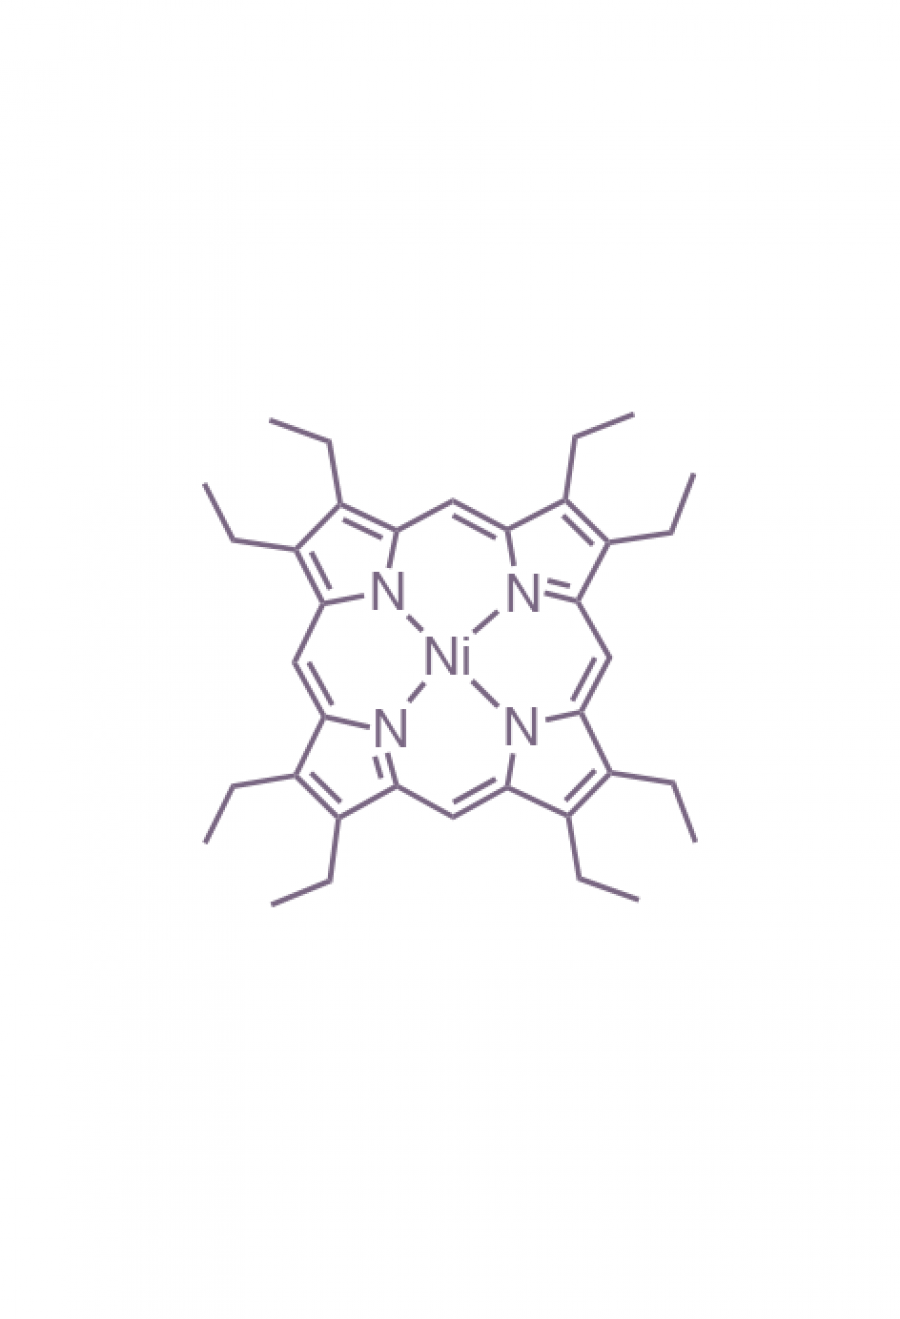 nickel(II) 2,3,7,8,12,13,17,18-(octaethyl)porphyrin